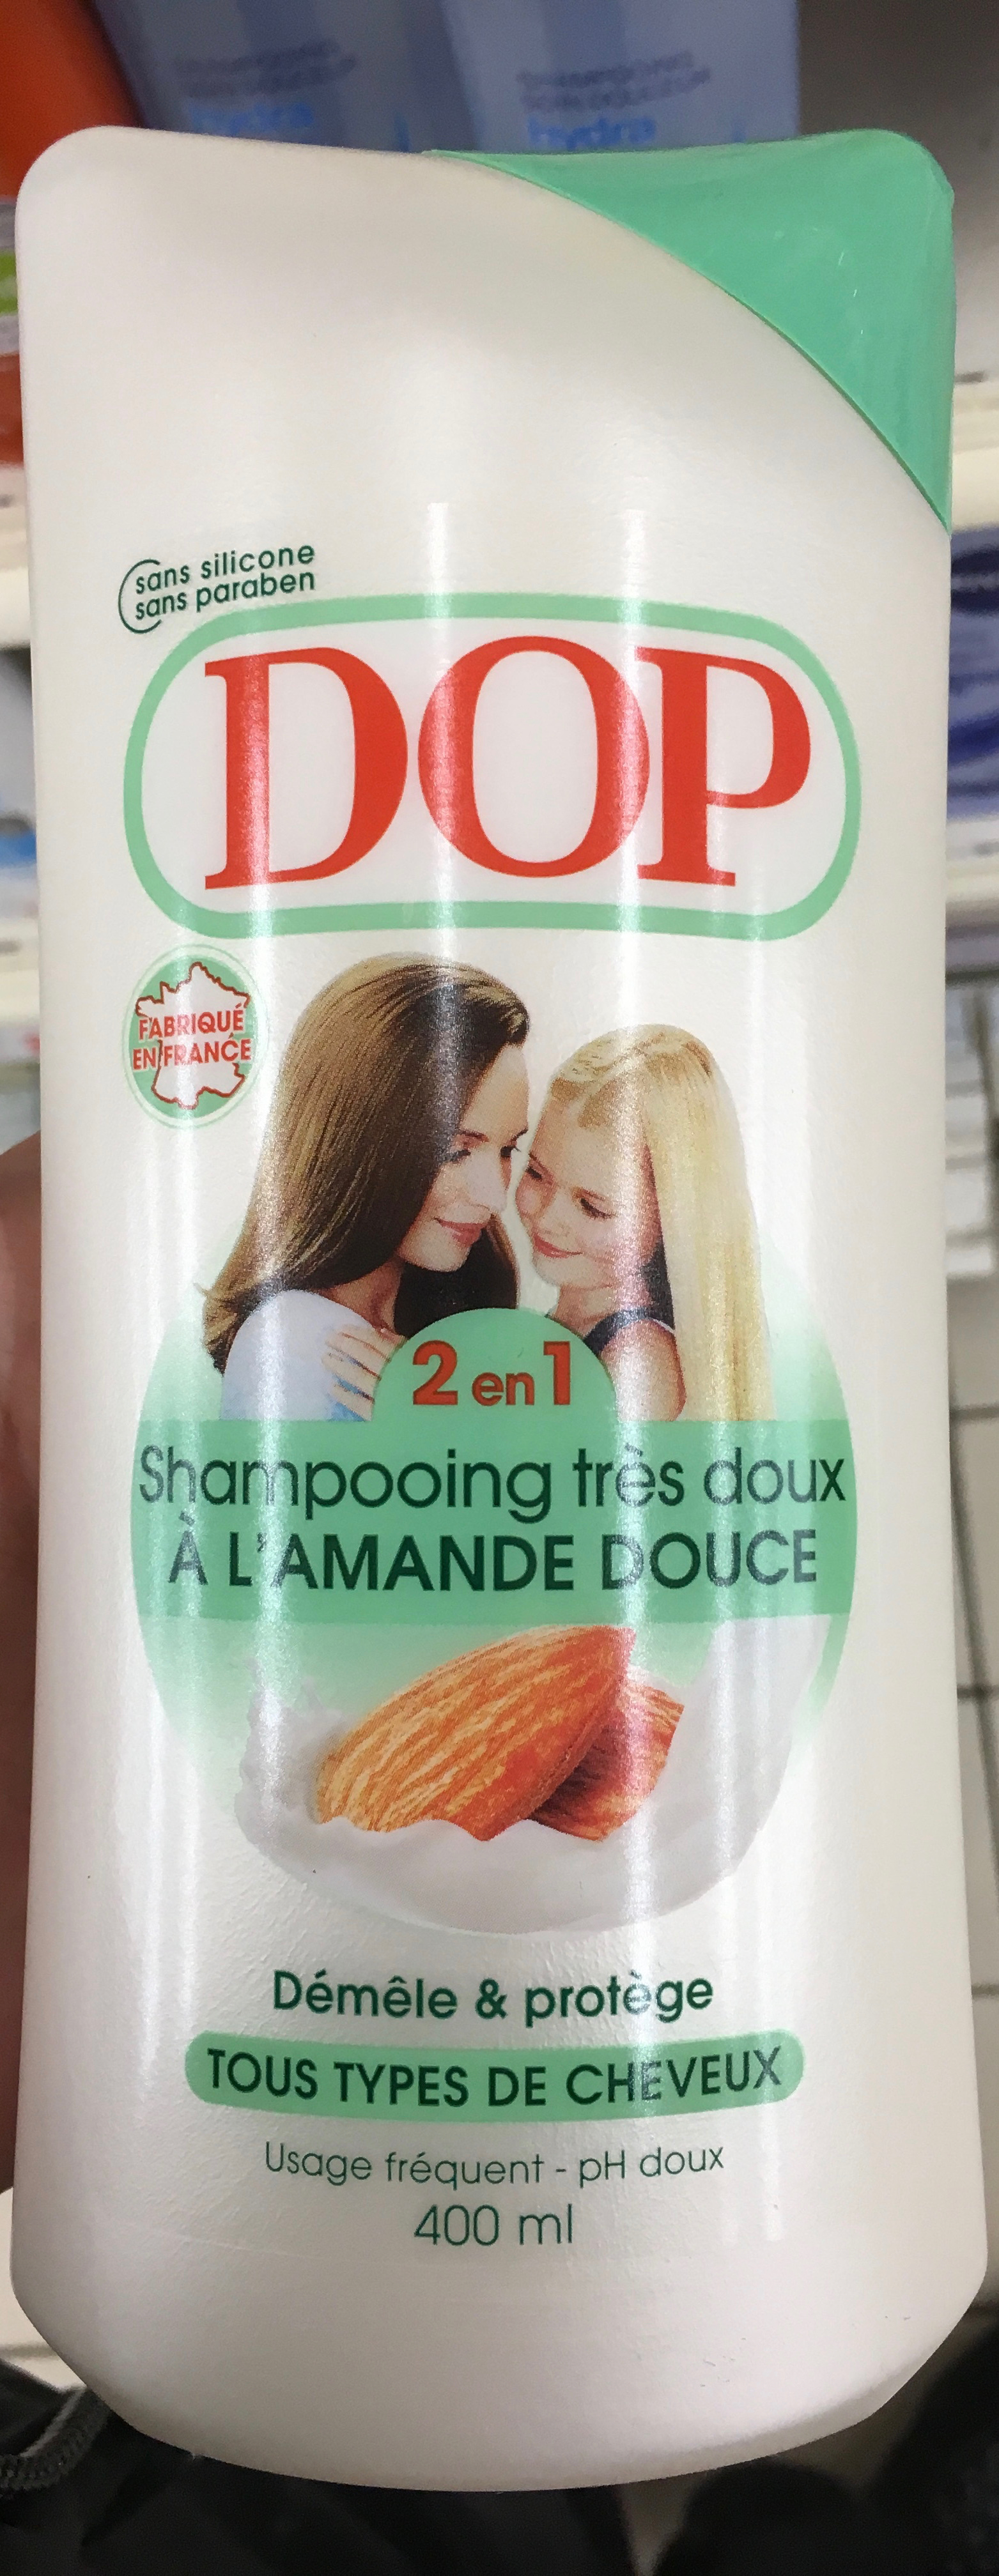 Shampooing très doux 2 en 1 à l'amande douce - Produit - fr